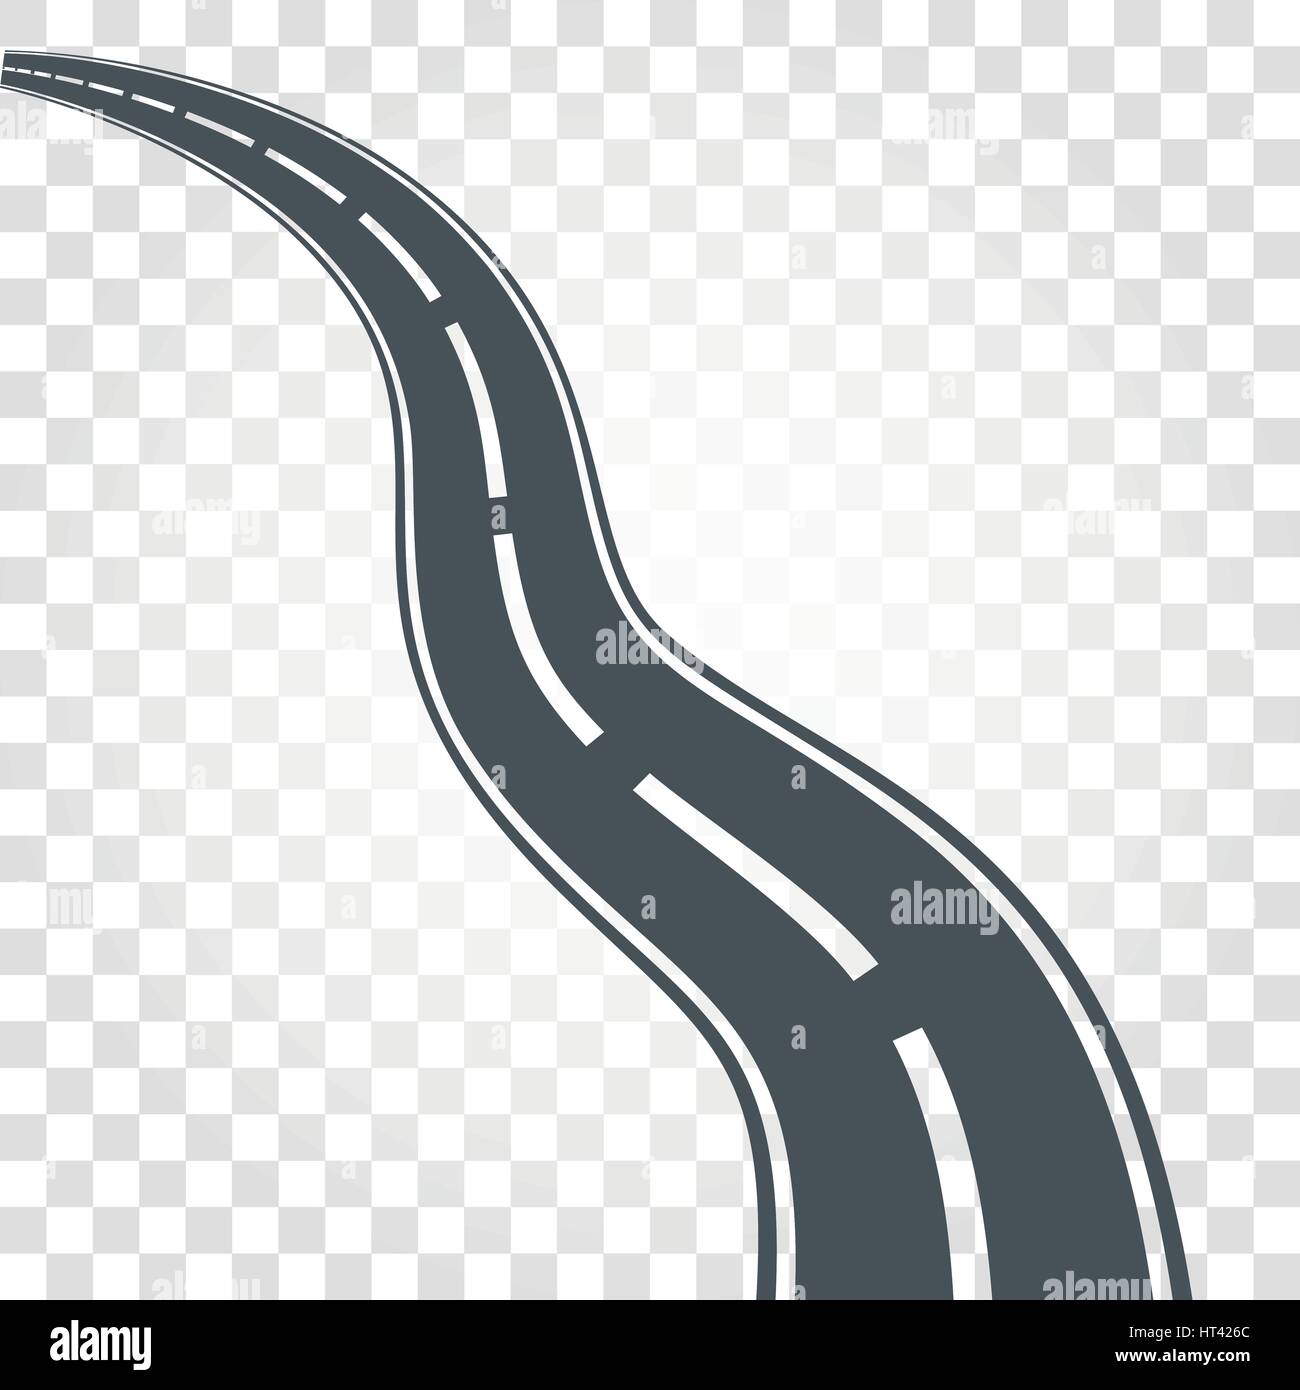 Couleur noir isolé route ou autoroute avec divisant apposés à checkered background vector illustration. Illustration de Vecteur